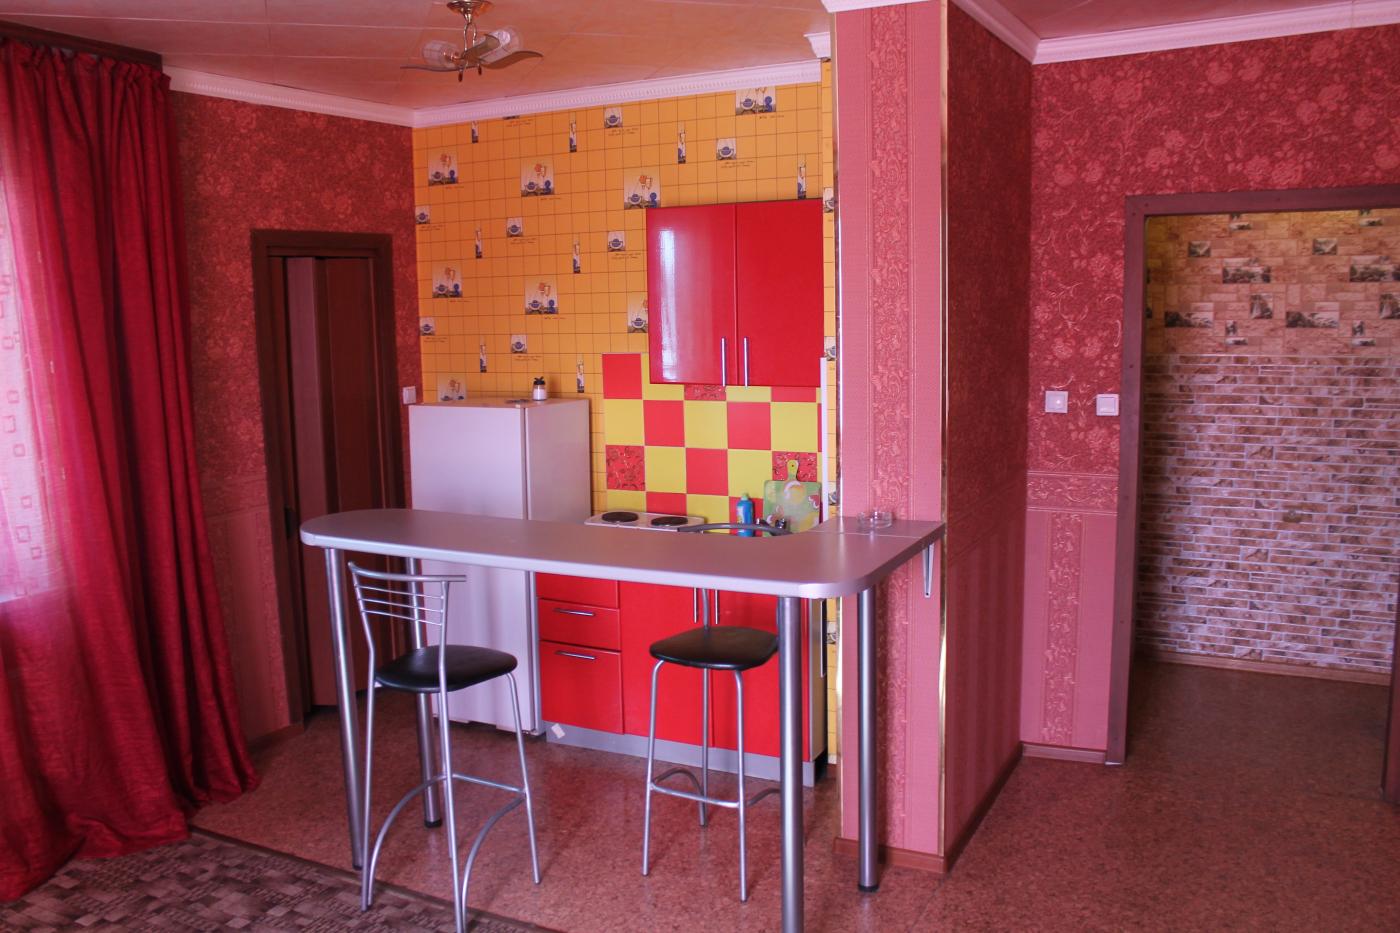 1-комнатная квартира посуточно (вариант № 589), ул. Антона Петрова улица, фото № 2